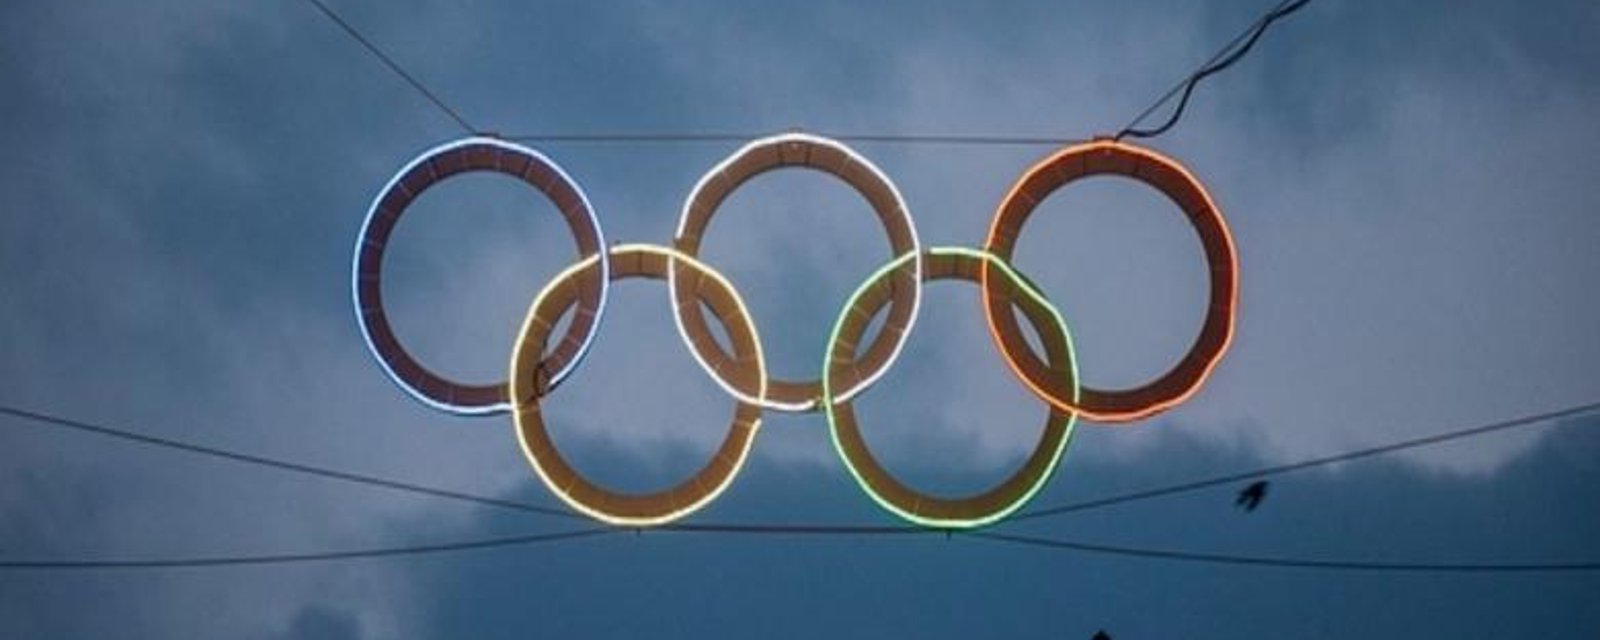 De bien mauvaises nouvelles pour les Olympiques de Rio.